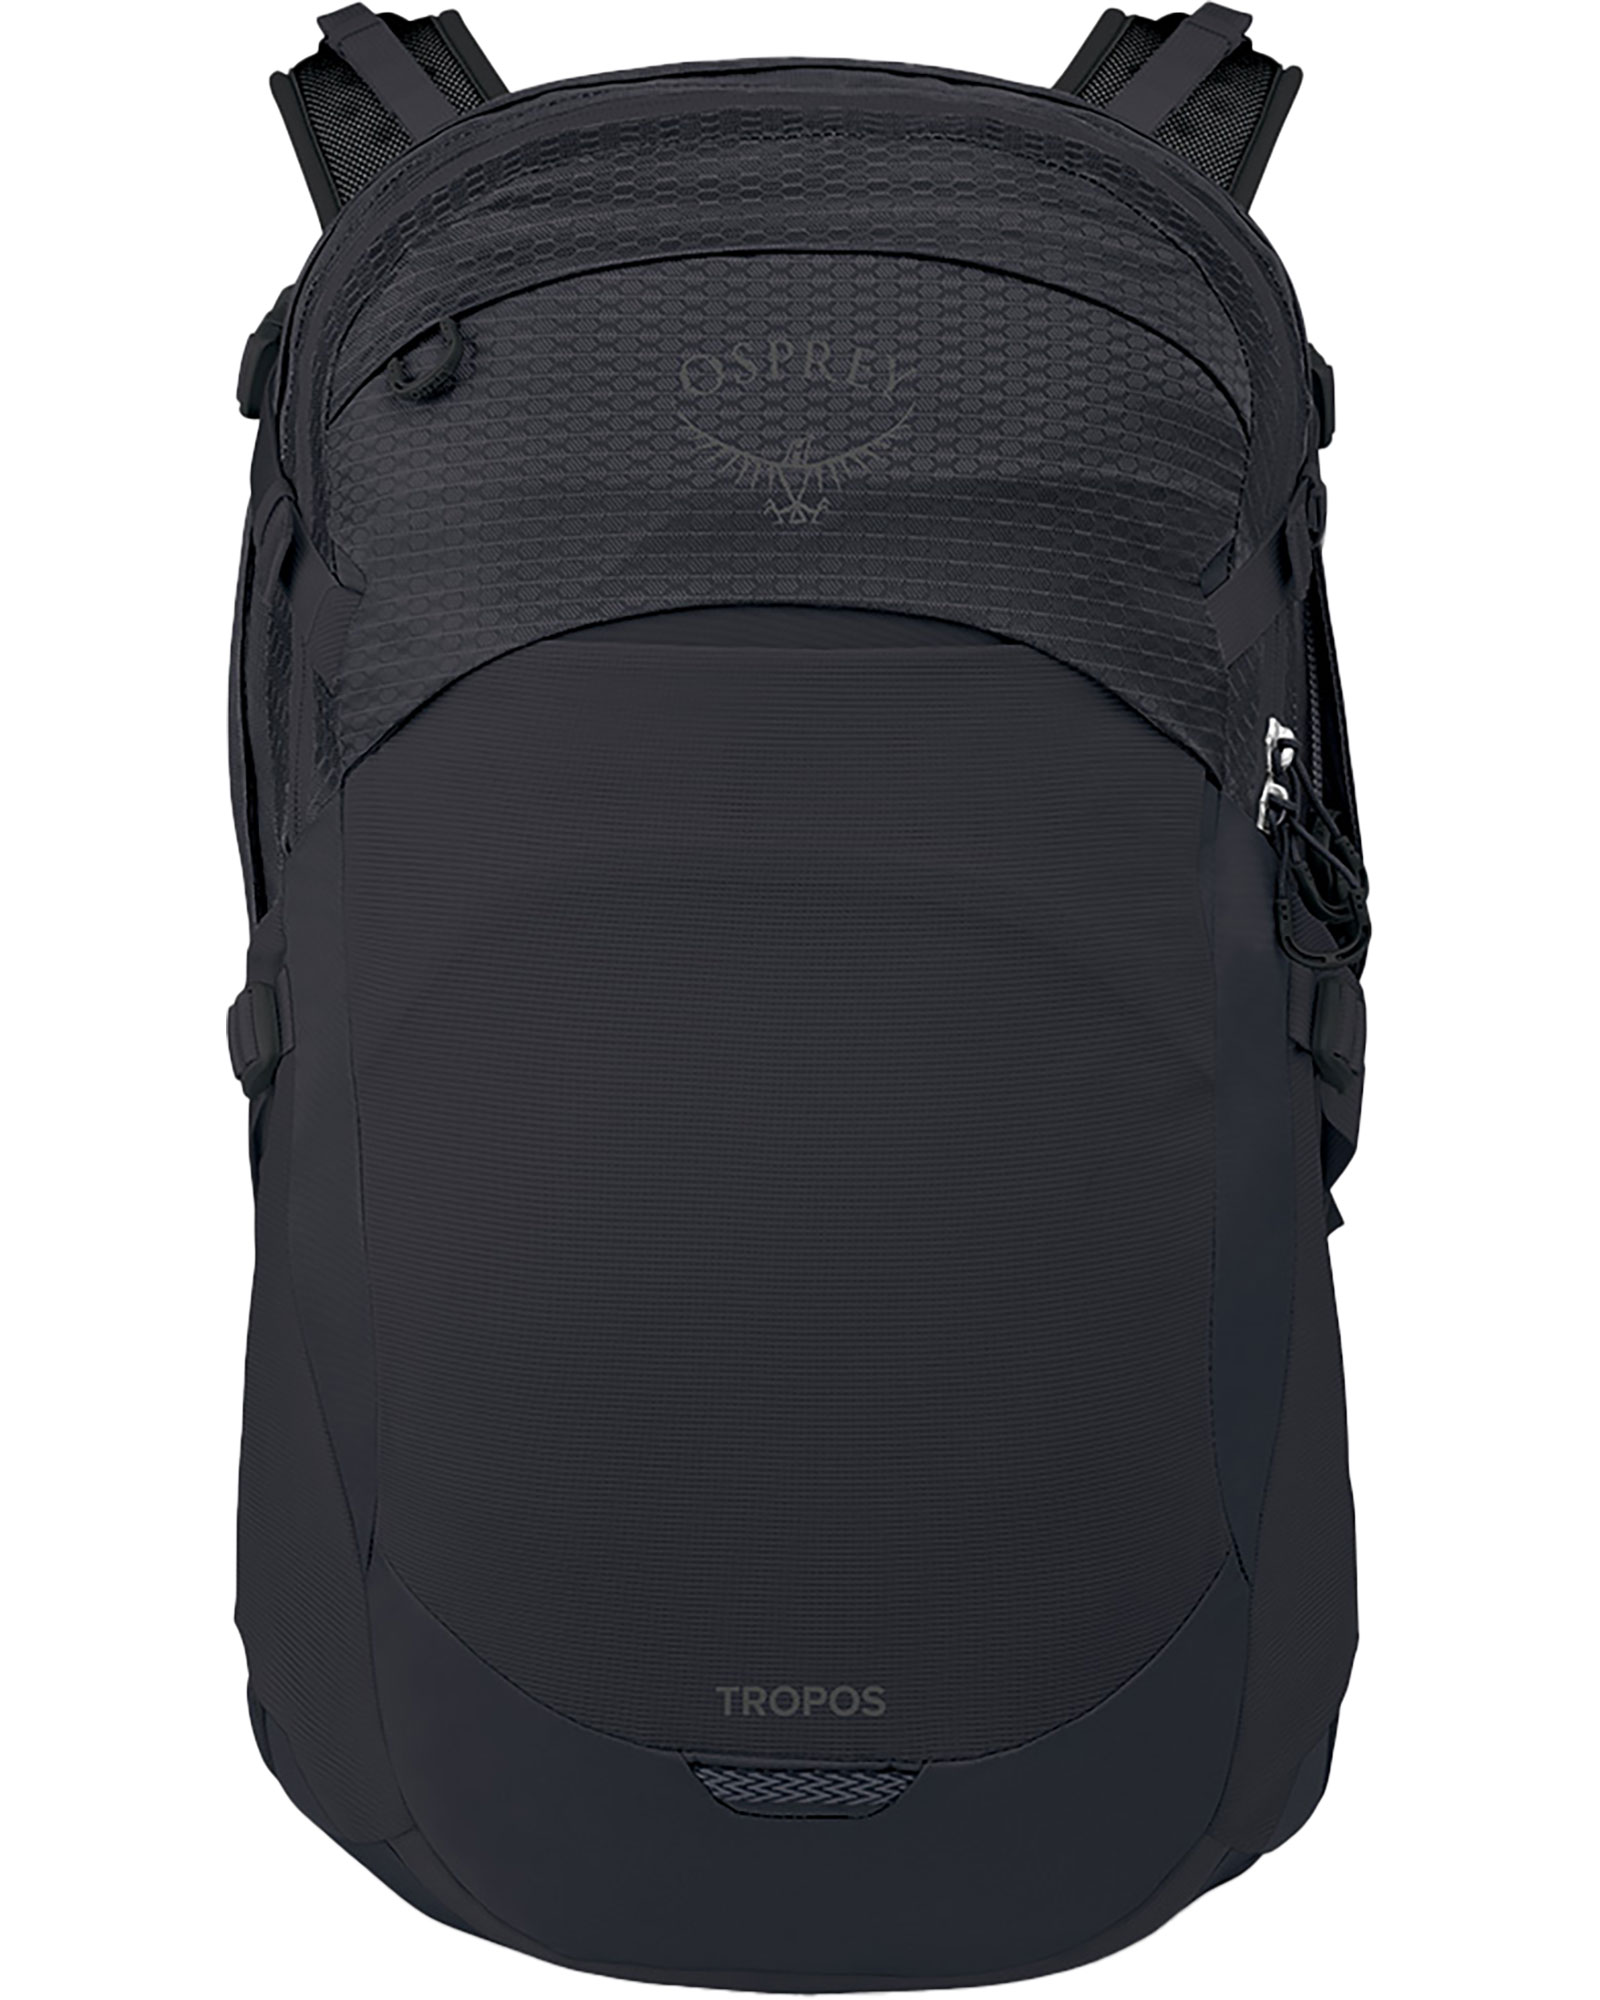 Osprey Tropos Backpack - black